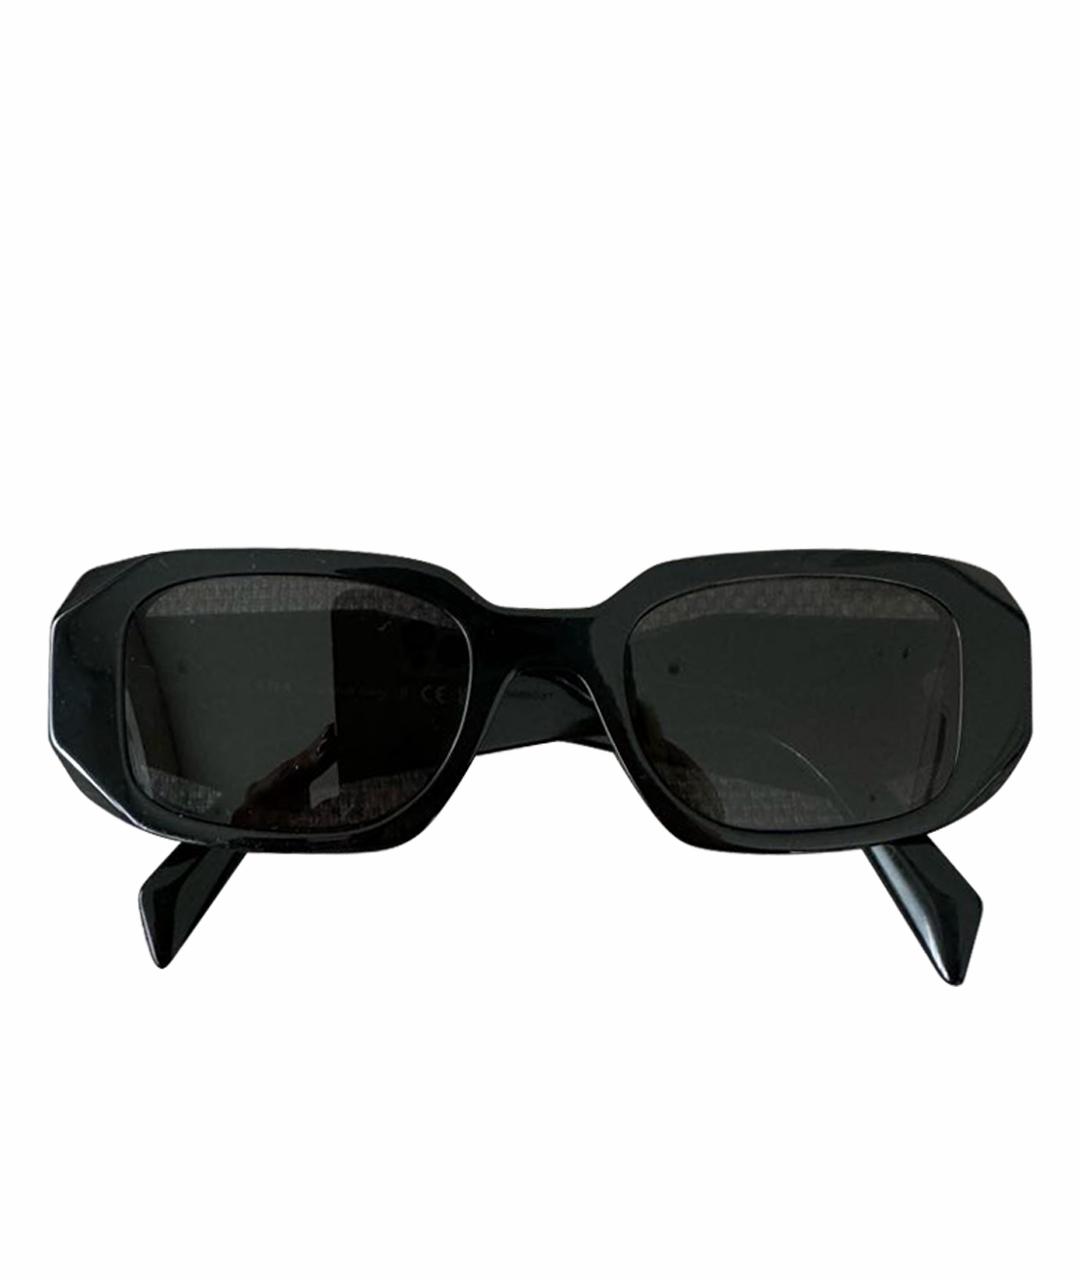 PRADA Черные пластиковые солнцезащитные очки, фото 1